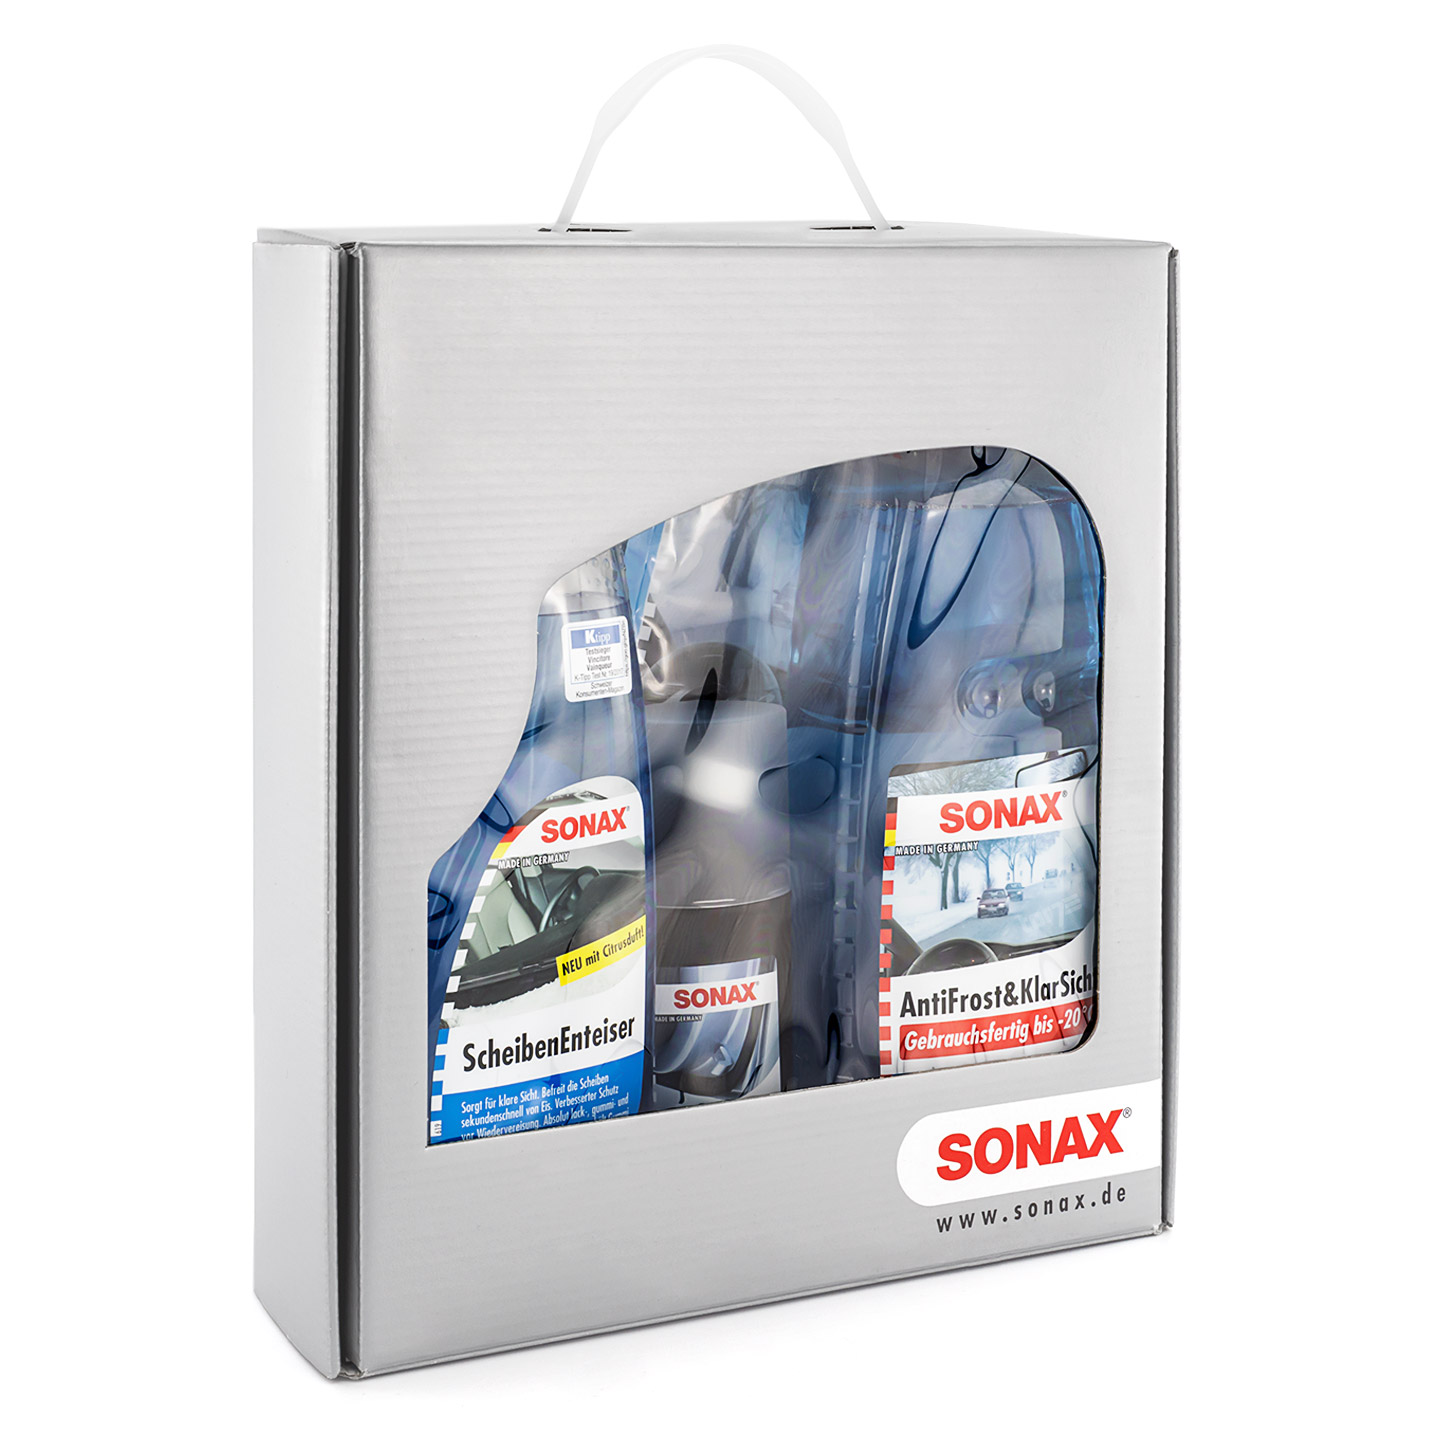 Sonax Autopflege Set Winter Fit + gratis Eiskratzer - Waschhelden, 27,91 €